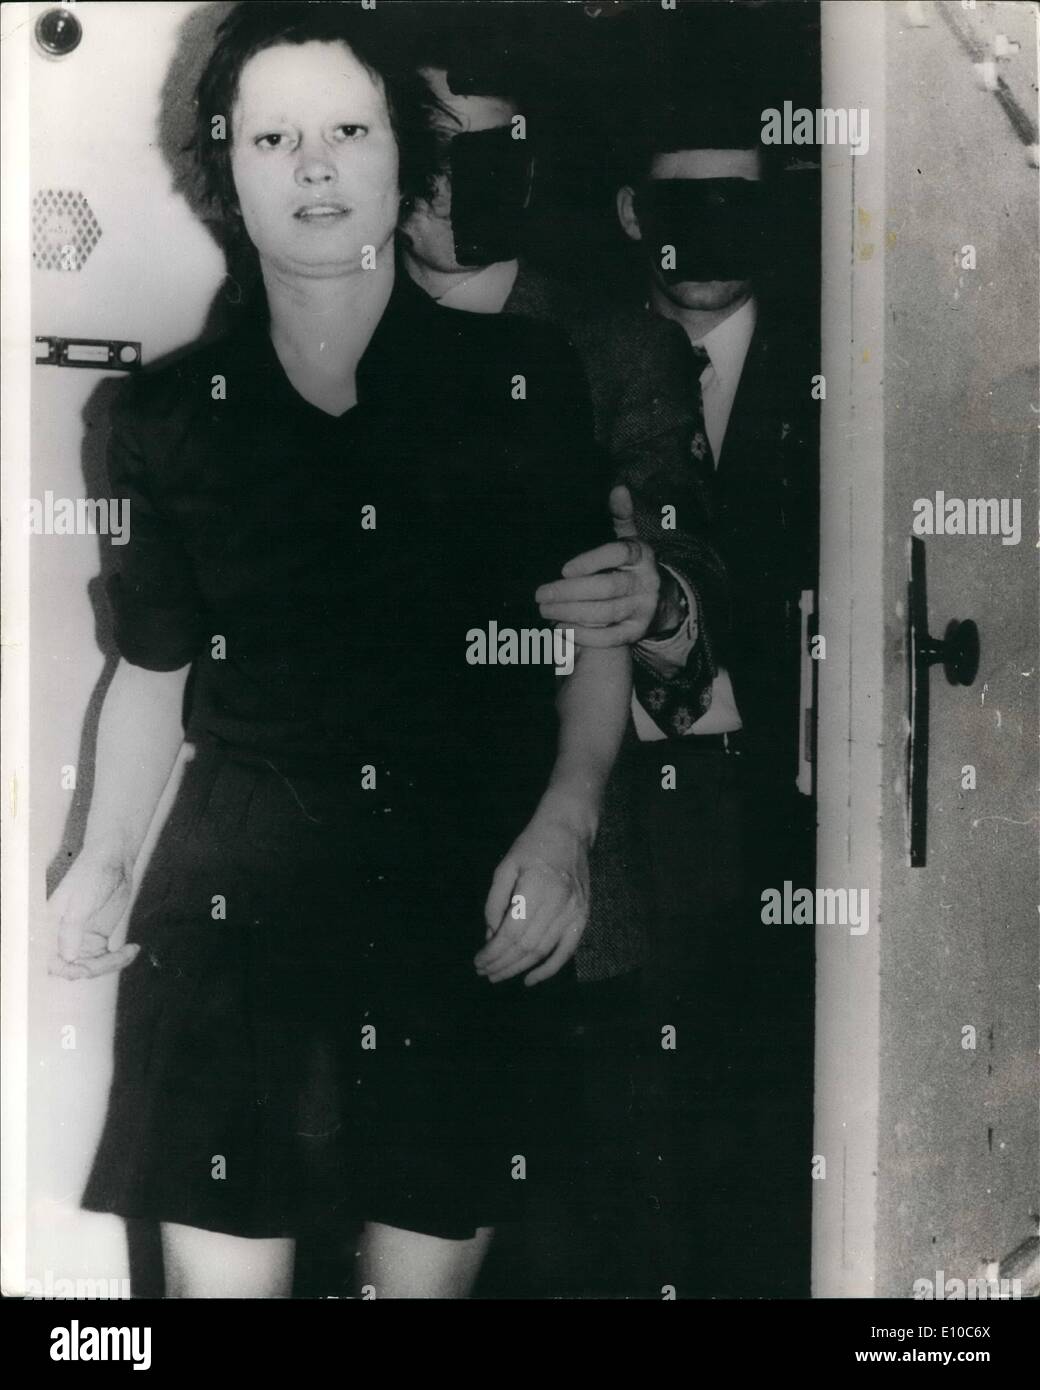 6. Juni 1972 - Frau Terroristen Bande Chef beschlagnahmt In Deutschland: Ulrike Meinhof, 37, Leiter der Bundesrepublik Deutschland '; s Header-Menohof der linke Terroristen in Hannover verhaftet wurde, war sie die beliebteste in Deutschland. Polizei, die einen Tipp erhalten brach in die Wohnung in der Nähe von Flughafen Hannover nach ein Kampf überwältigt Mainhof und Gergart Muller, ein 24-jährige Student, der mit ihr war. In der Wohnung wurden ein sub-machine-gun, drei Pistolen, zwei Handgranaten, eine neun-Pfund-Bombe und Munition gefunden. Foto zeigt Ulrike Meinhof im Bild nach ihrer Verhaftung. Stockfoto